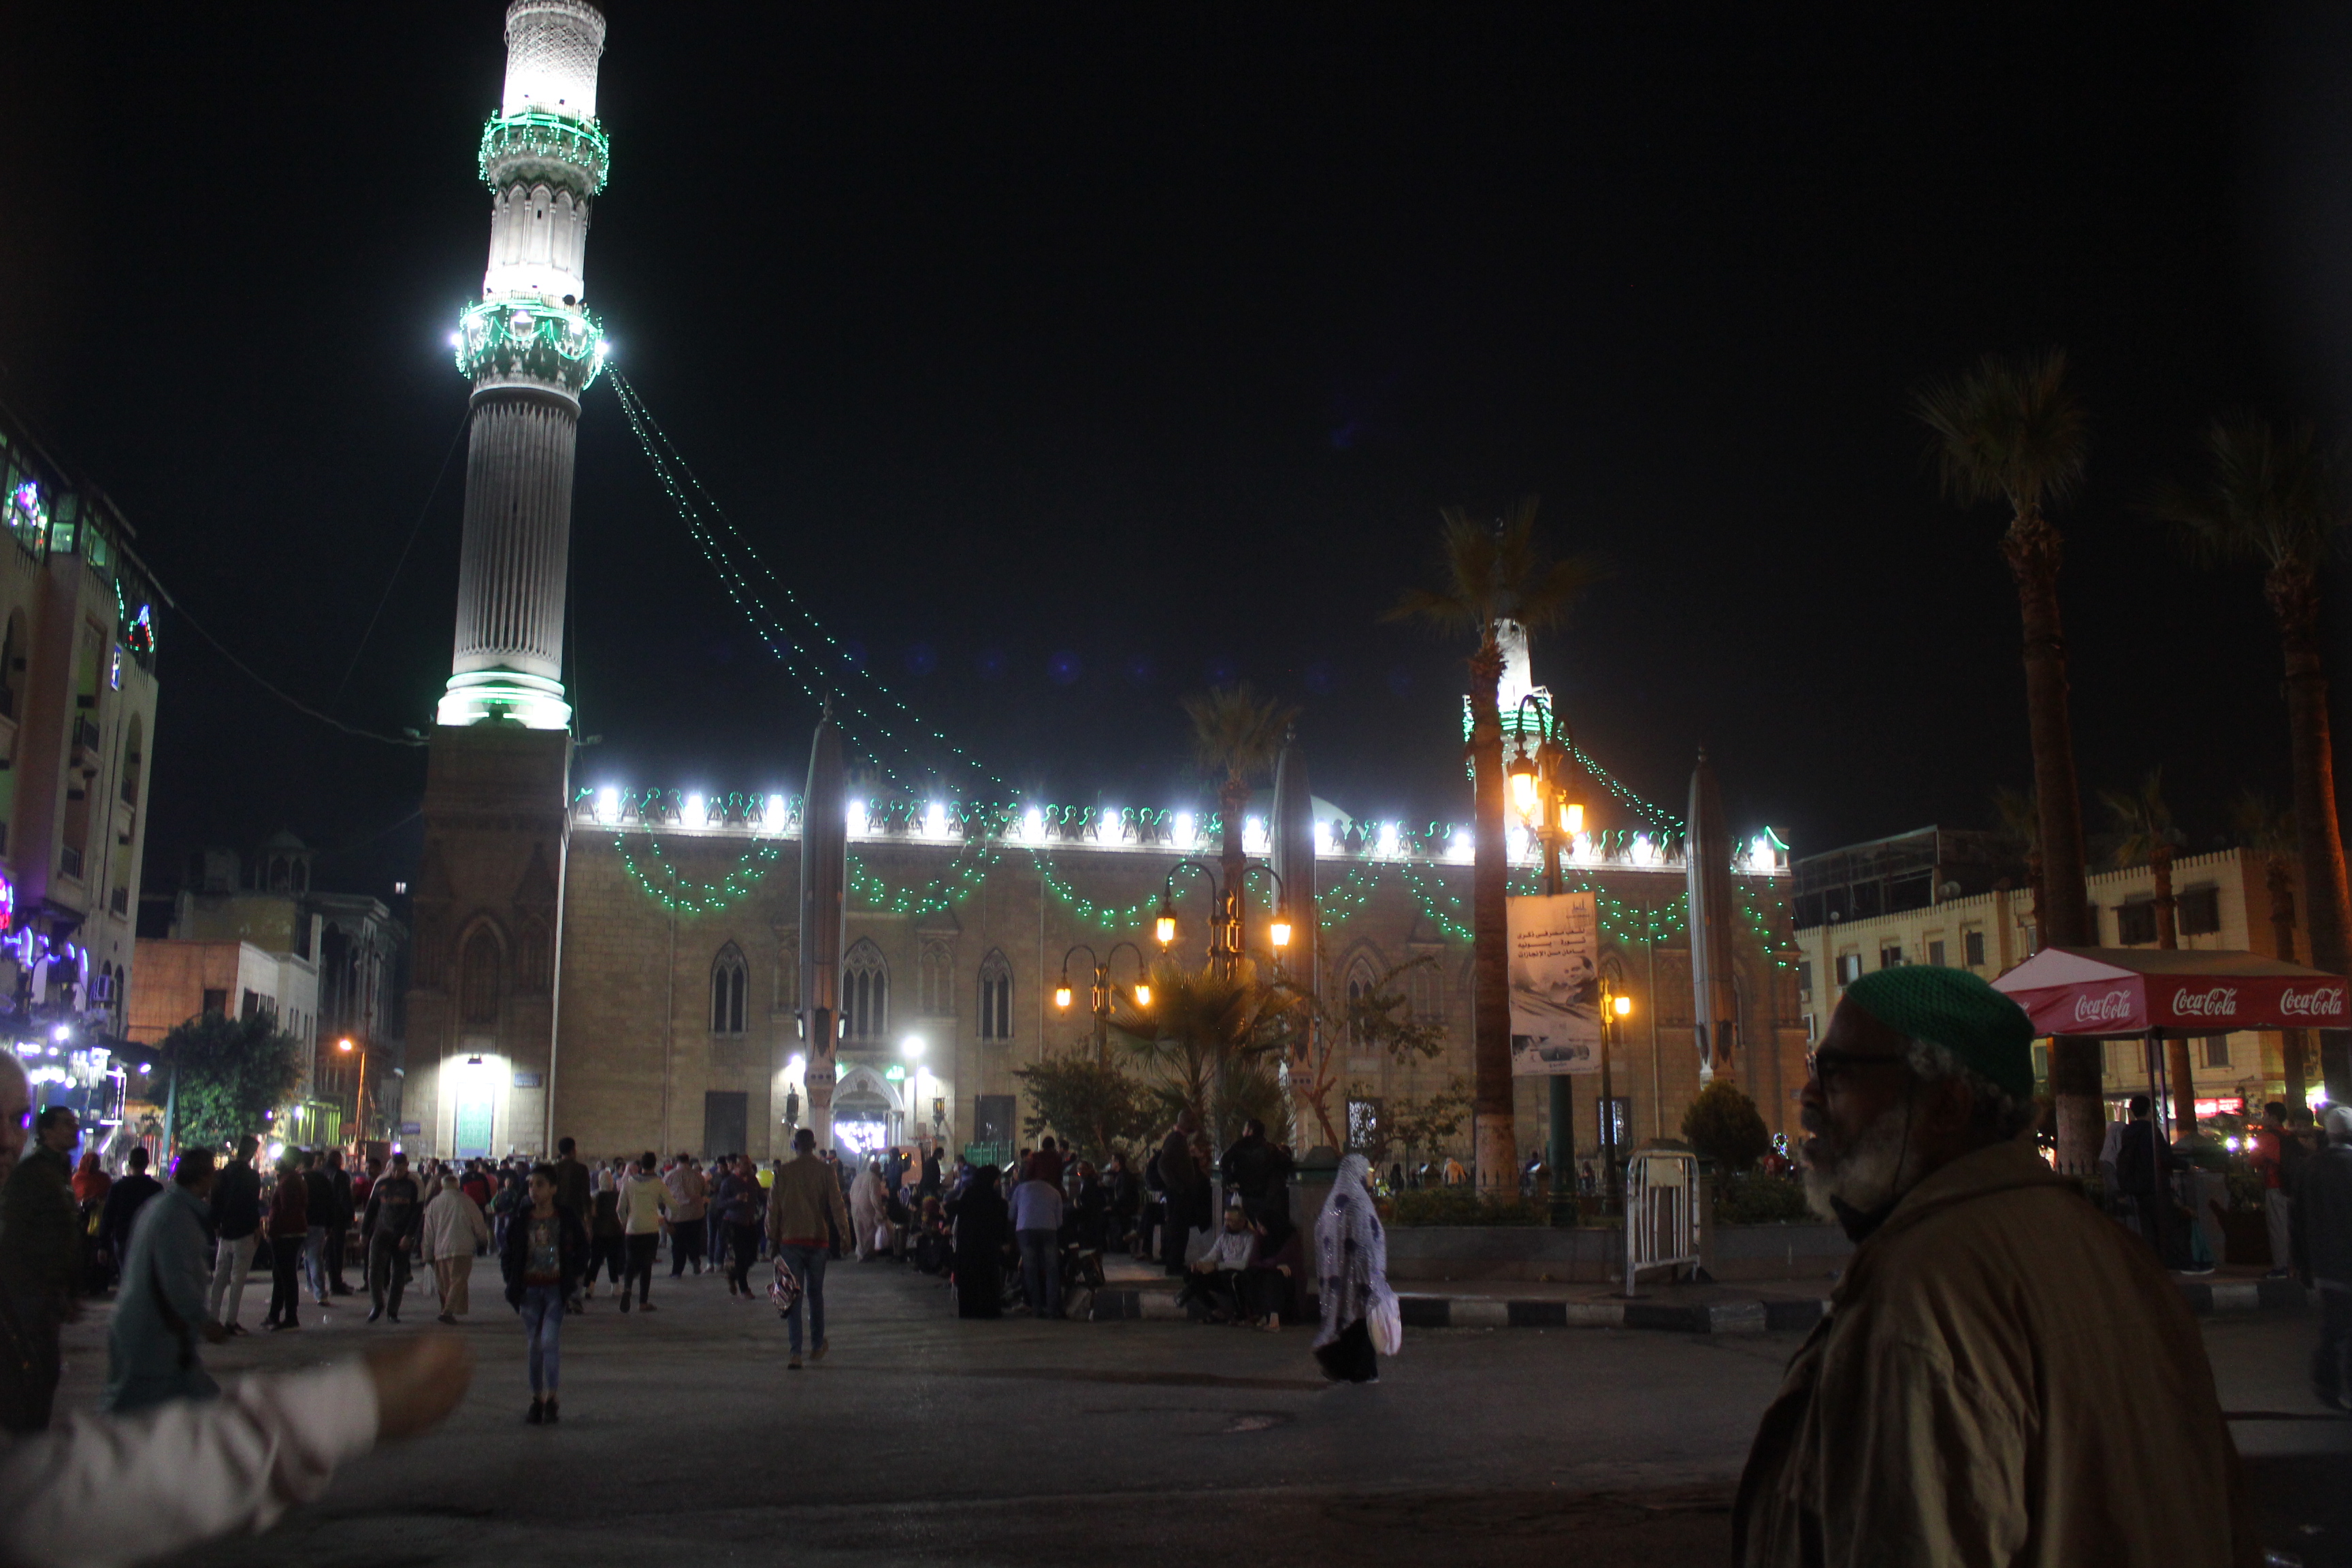 مرقد ومسجد الأمام الحسين في مدخل منطقة خان الخليلي - القاهرة - مصر. الصورة: ملهم الملائكة 